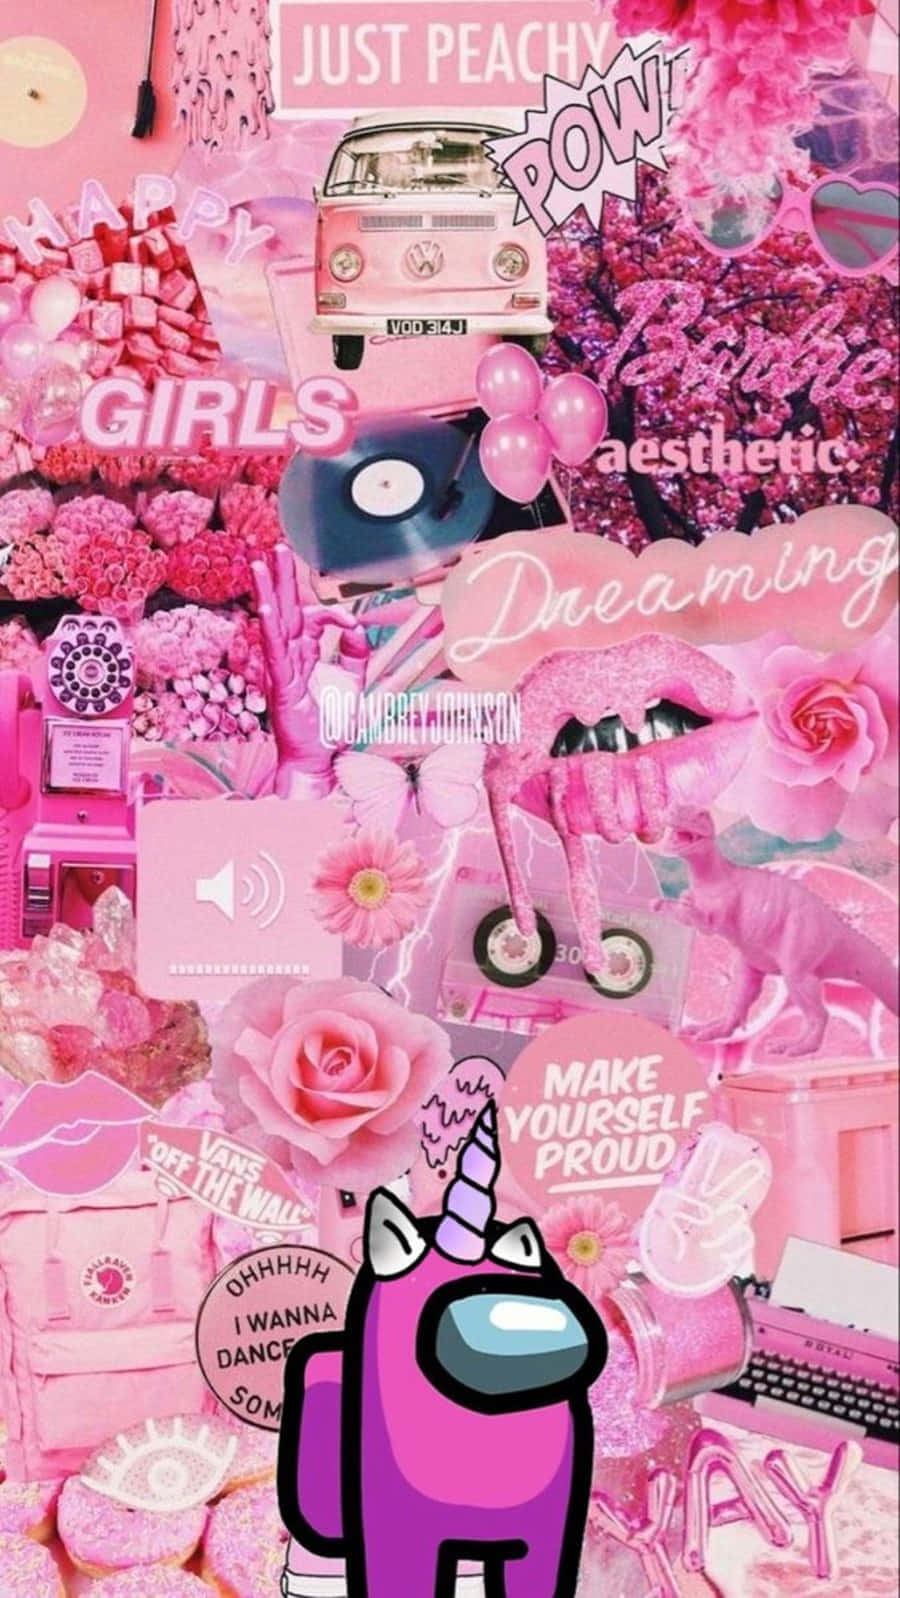 Pinkenhjørninger, Pink Blomster, Pink Enhjørninger, Pink Enhjørninger, Pink Enhjørninger, Pink Enhjørninger, Pink Enhjørninger, Pink Enhjørninger, Pink.